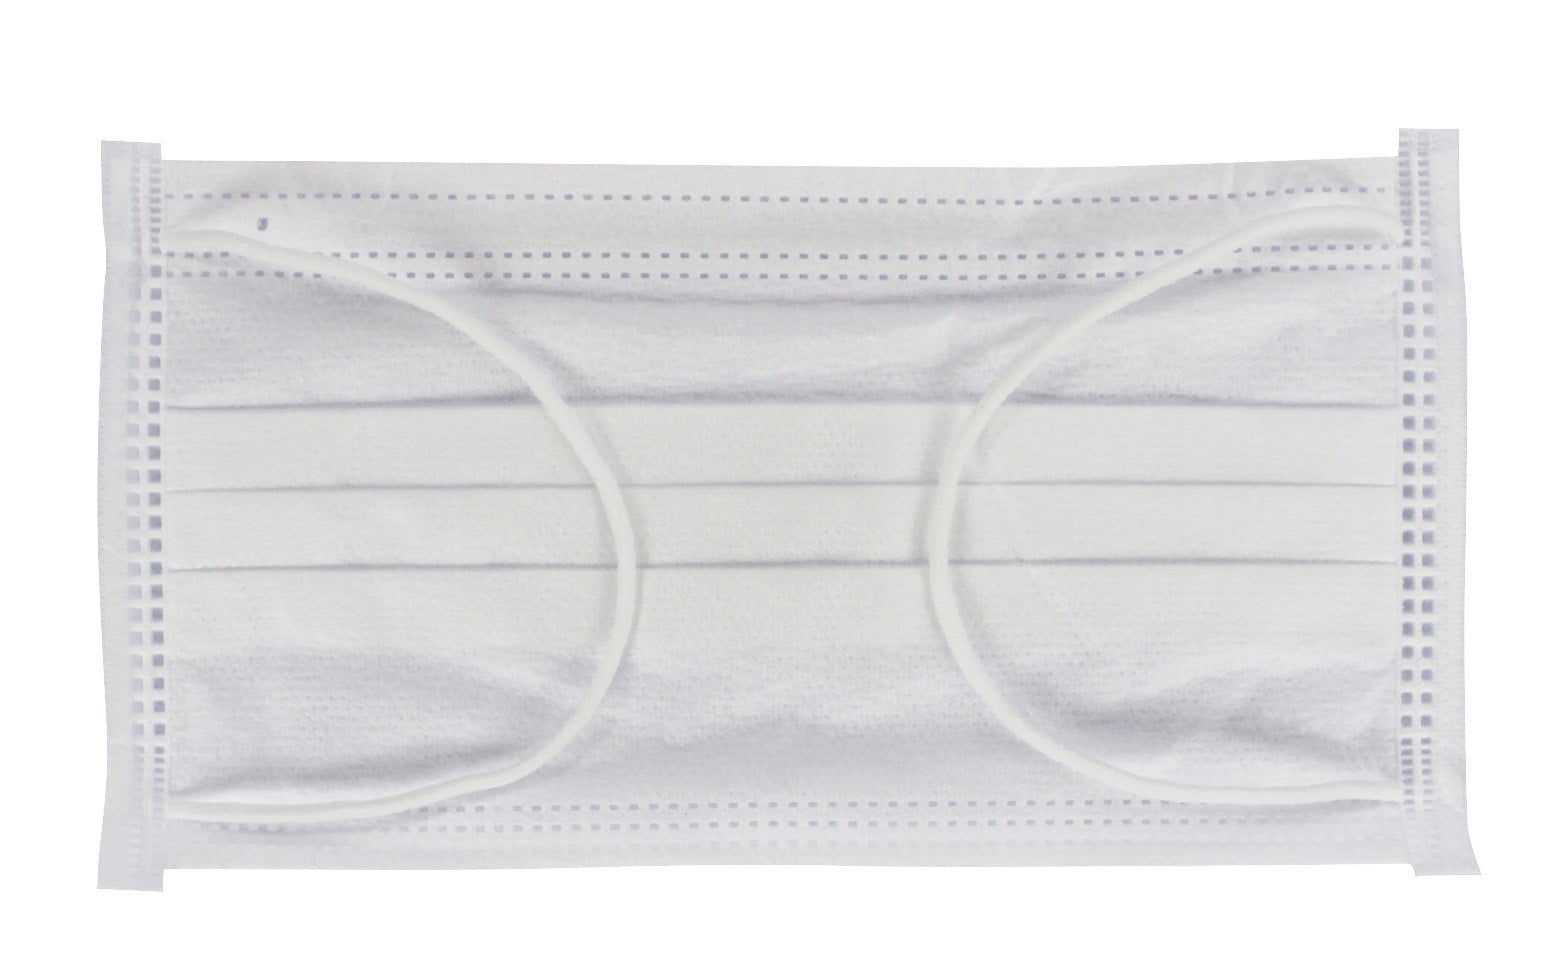 Medi-Inn Mundschutz Atemschutz mit Elastikbändern Typ II 3-lagig weiß